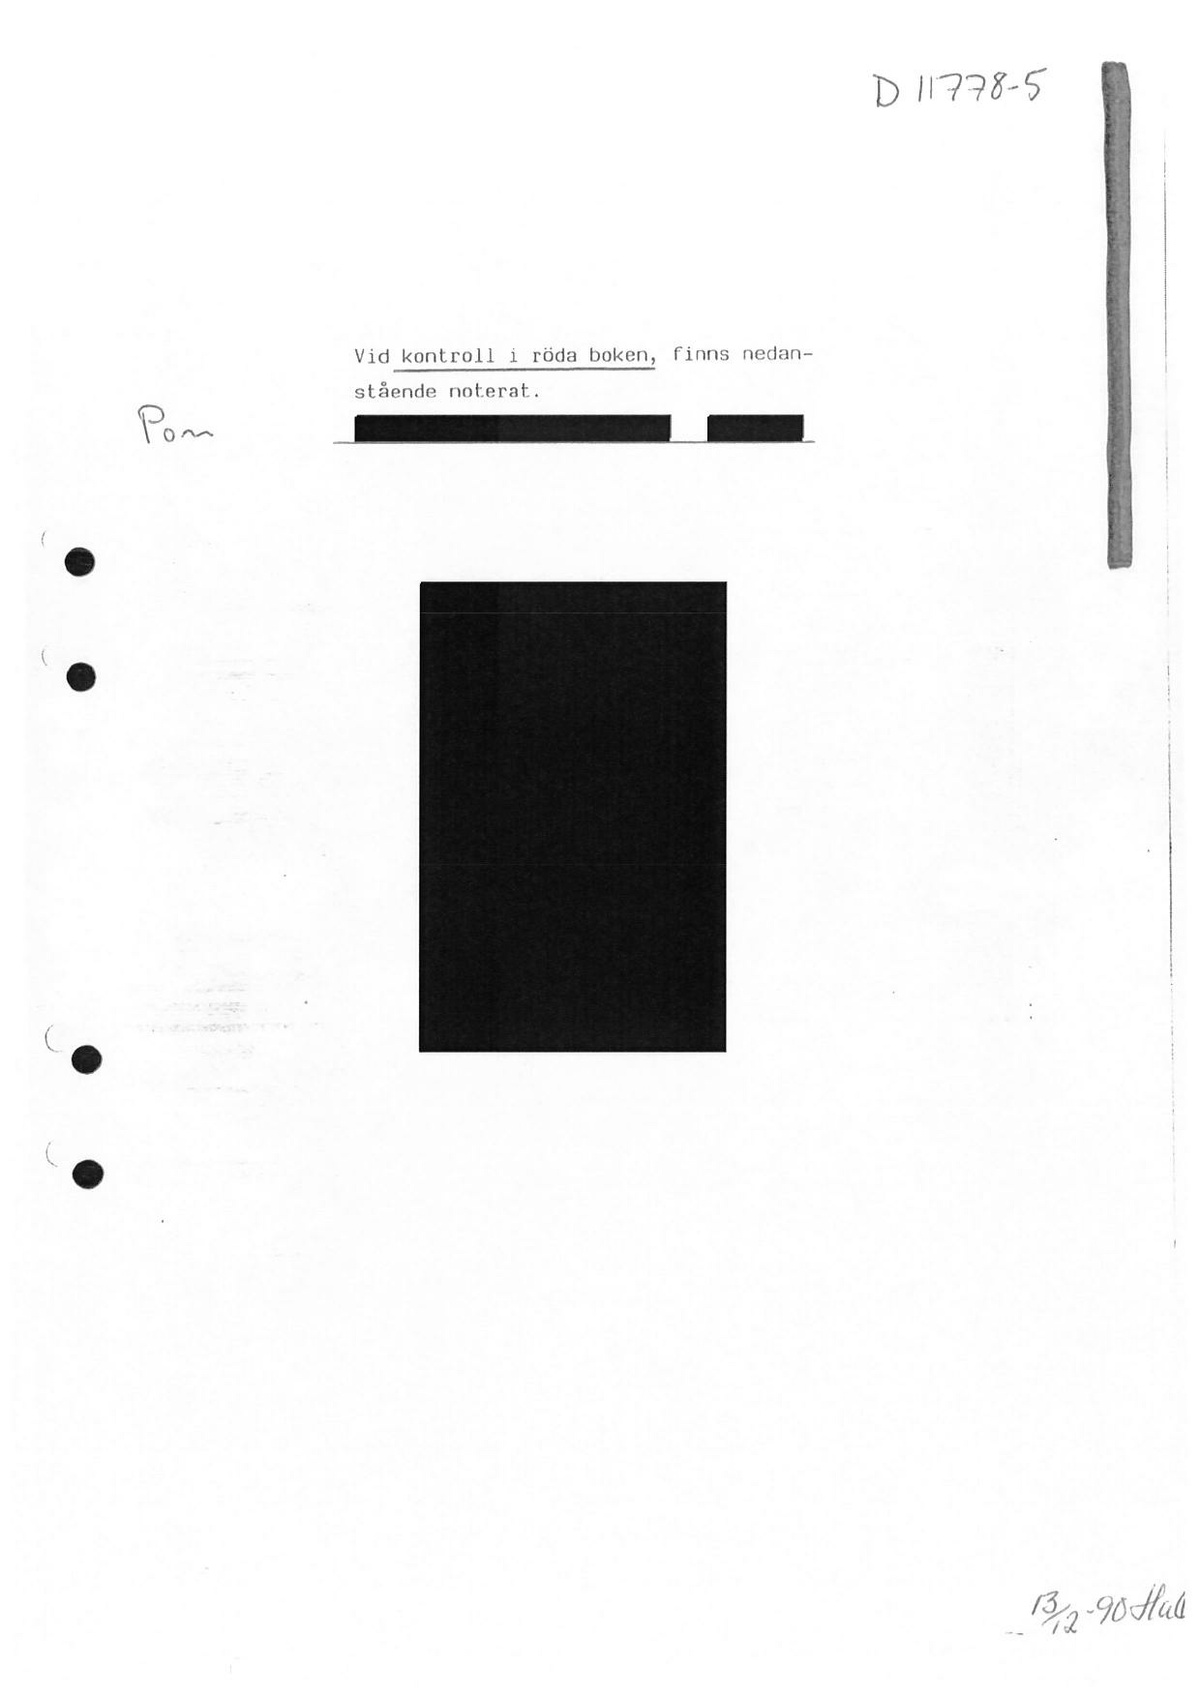 Pol-1986-11-04 D11778-05 Alibi-känd-kriminell.pdf